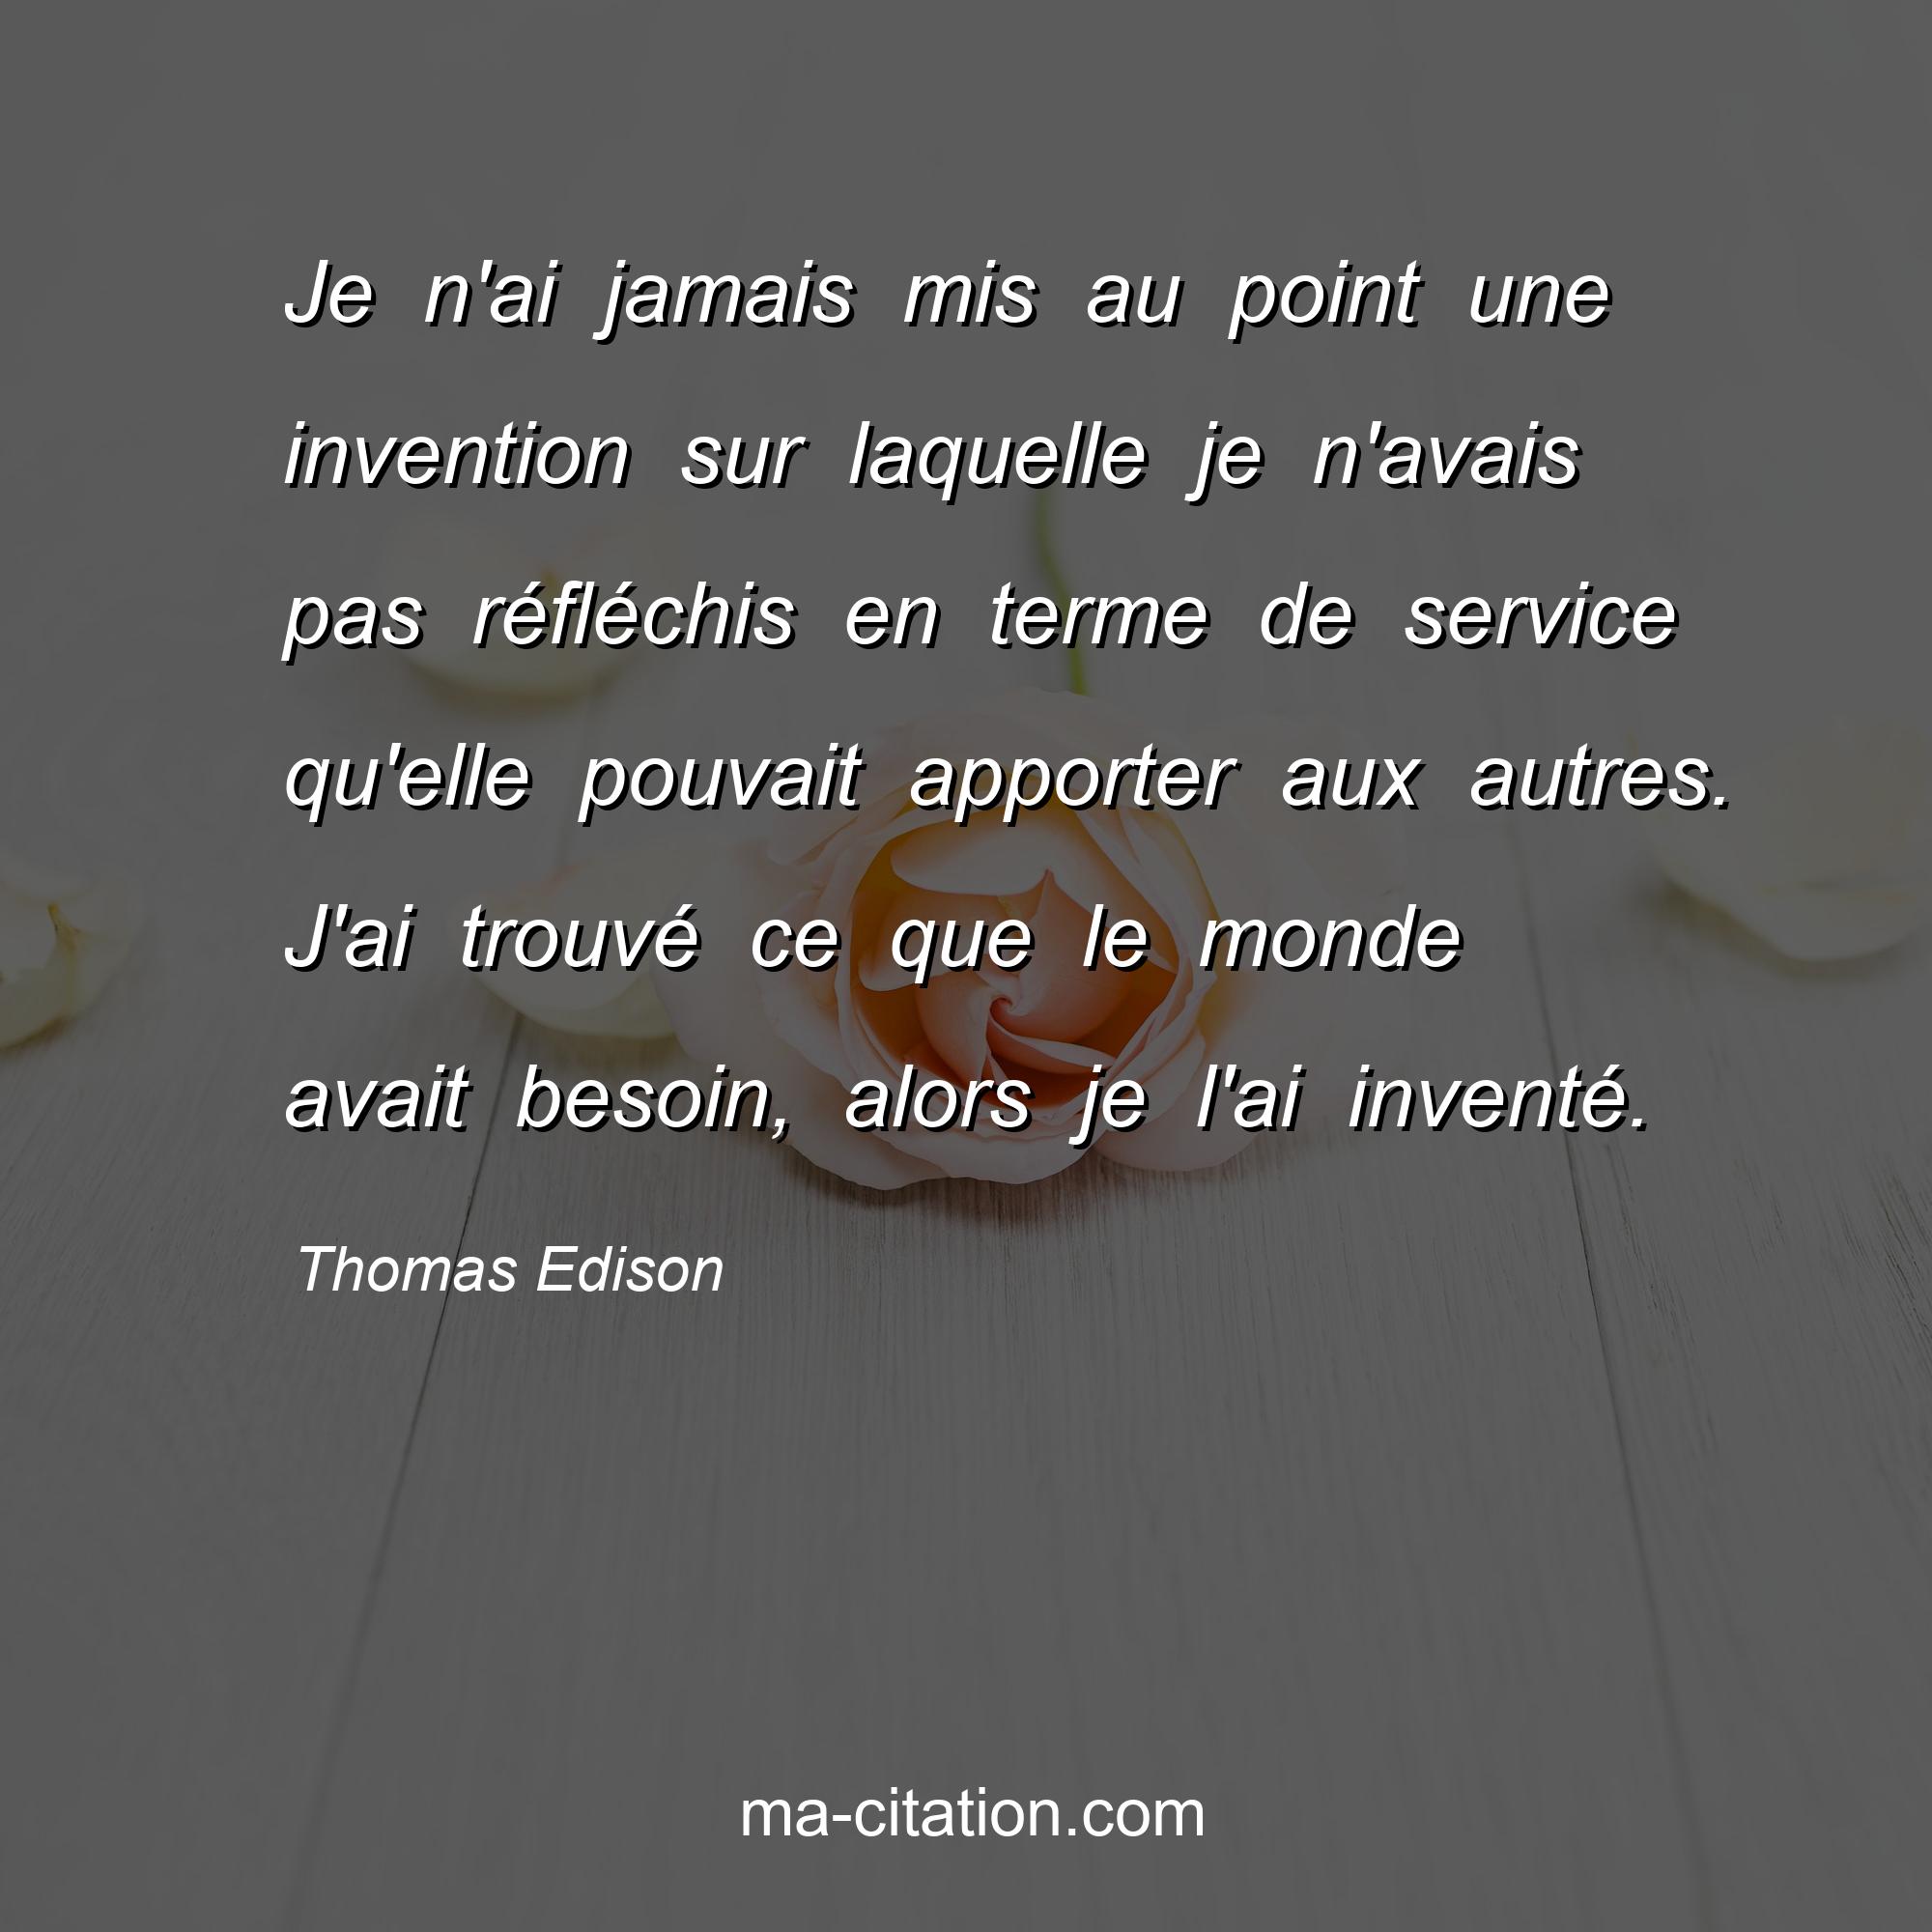 Thomas Edison : Je n'ai jamais mis au point une invention sur laquelle je n'avais pas réfléchis en terme de service qu'elle pouvait apporter aux autres. J'ai trouvé ce que le monde avait besoin, alors je l'ai inventé.